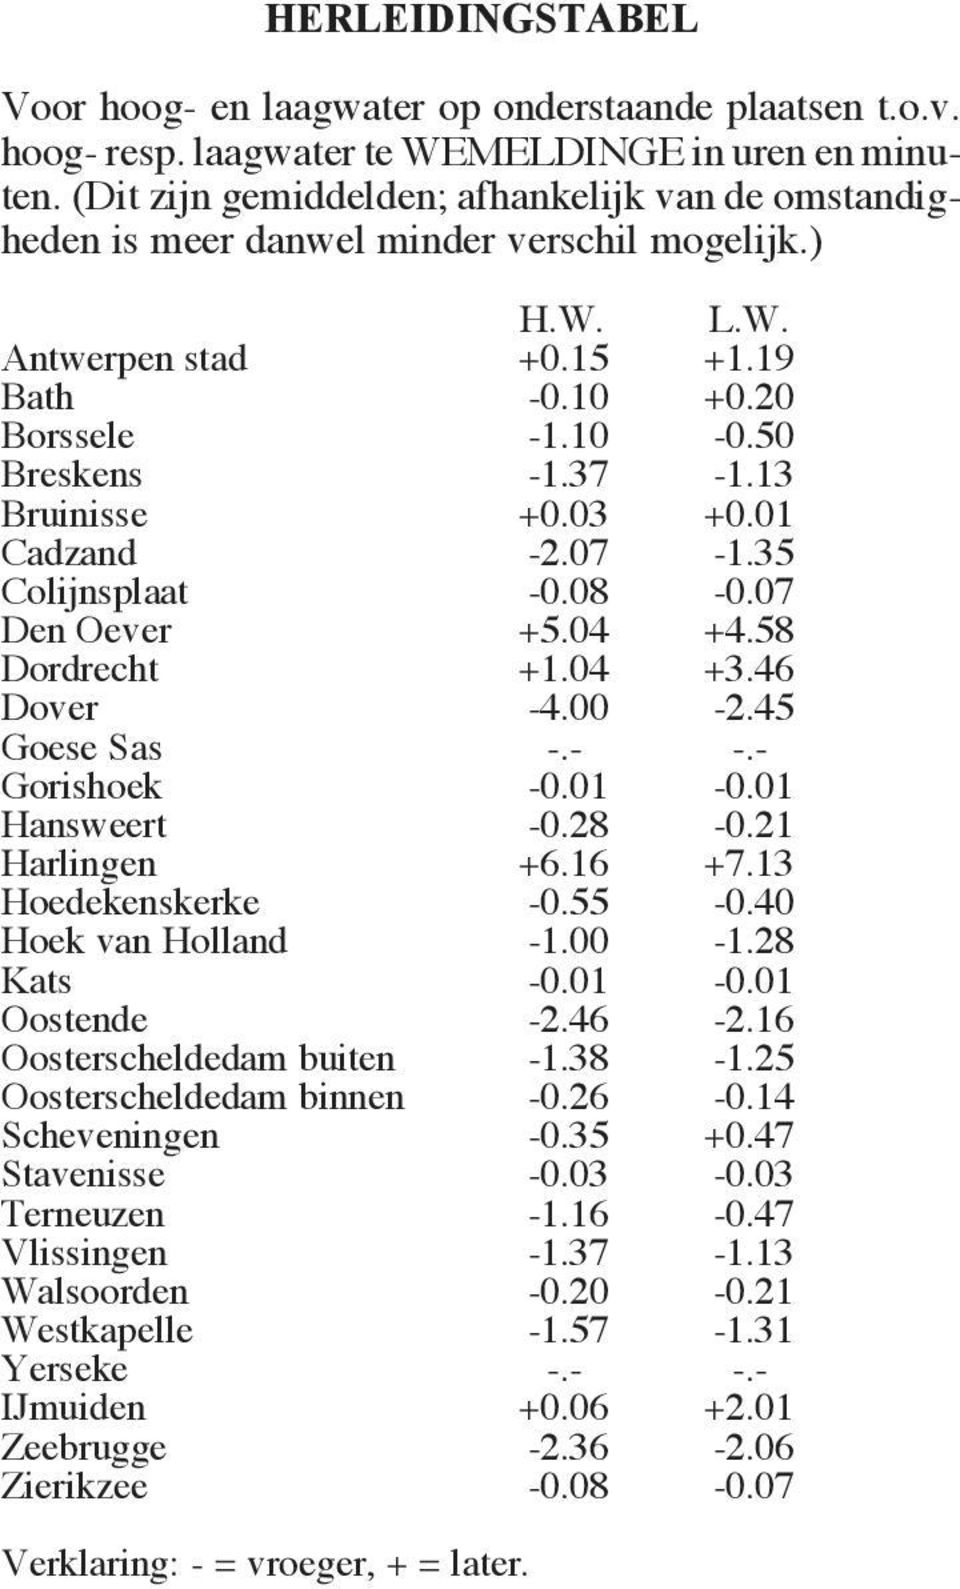 13 Bruinisse +0.03 +0.01 Cadzand -2.07-1.35 Colijnsplaat -0.08-0.07 Den Oever +5.04 +4.58 Dordrecht +1.04 +3.46 Dover -4.00-2.45 Goese Sas -.- -.- Gorishoek -0.01-0.01 Hansweert -0.28-0.